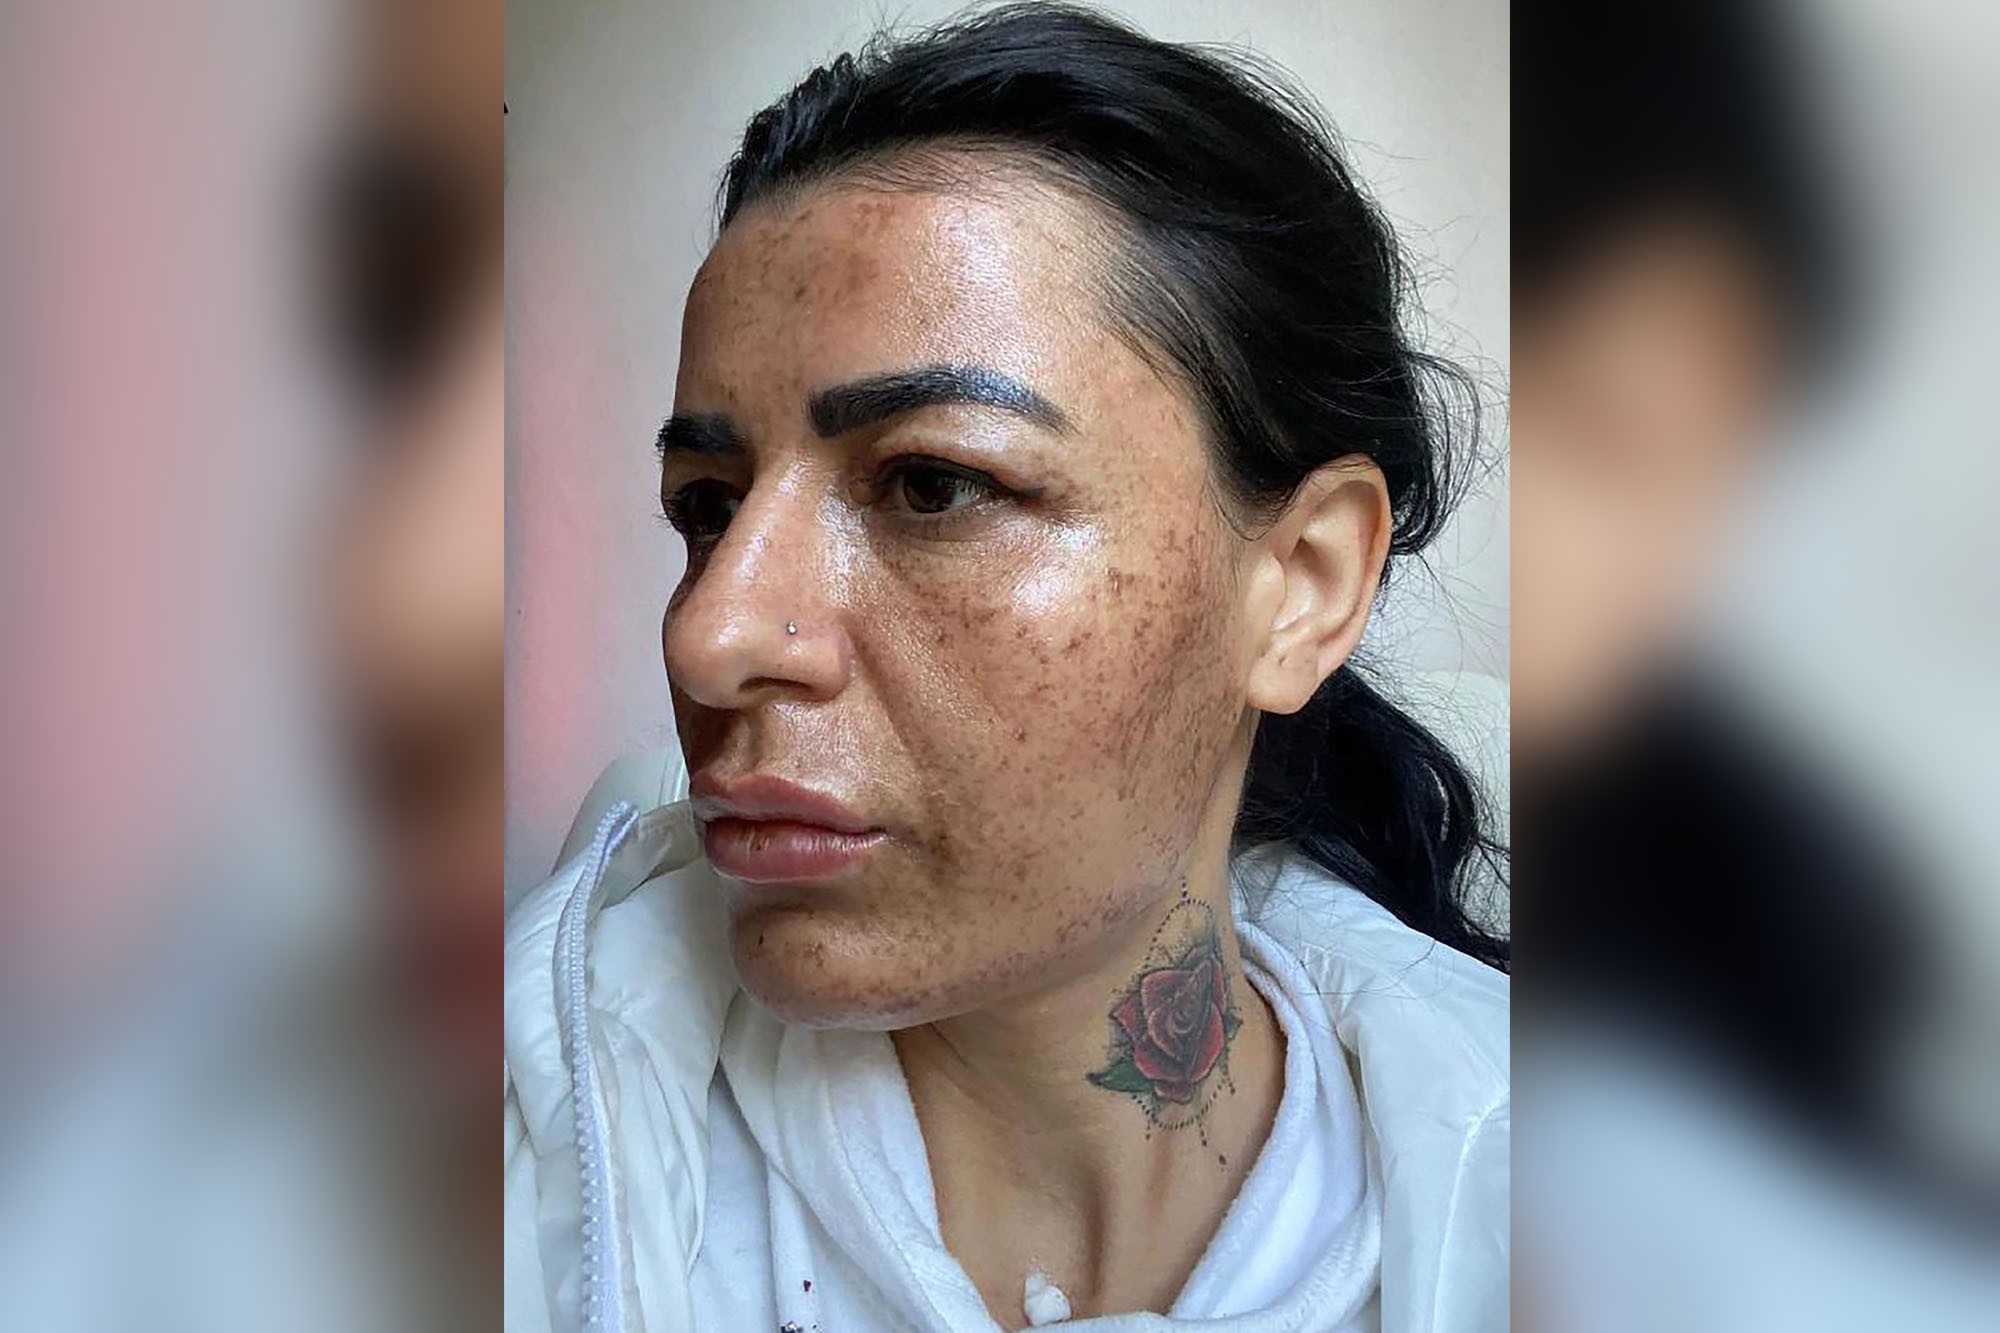 Mulher fica com cicatrizes após esteticista se distrair no celular (Foto: Reprodução/ NY Post)